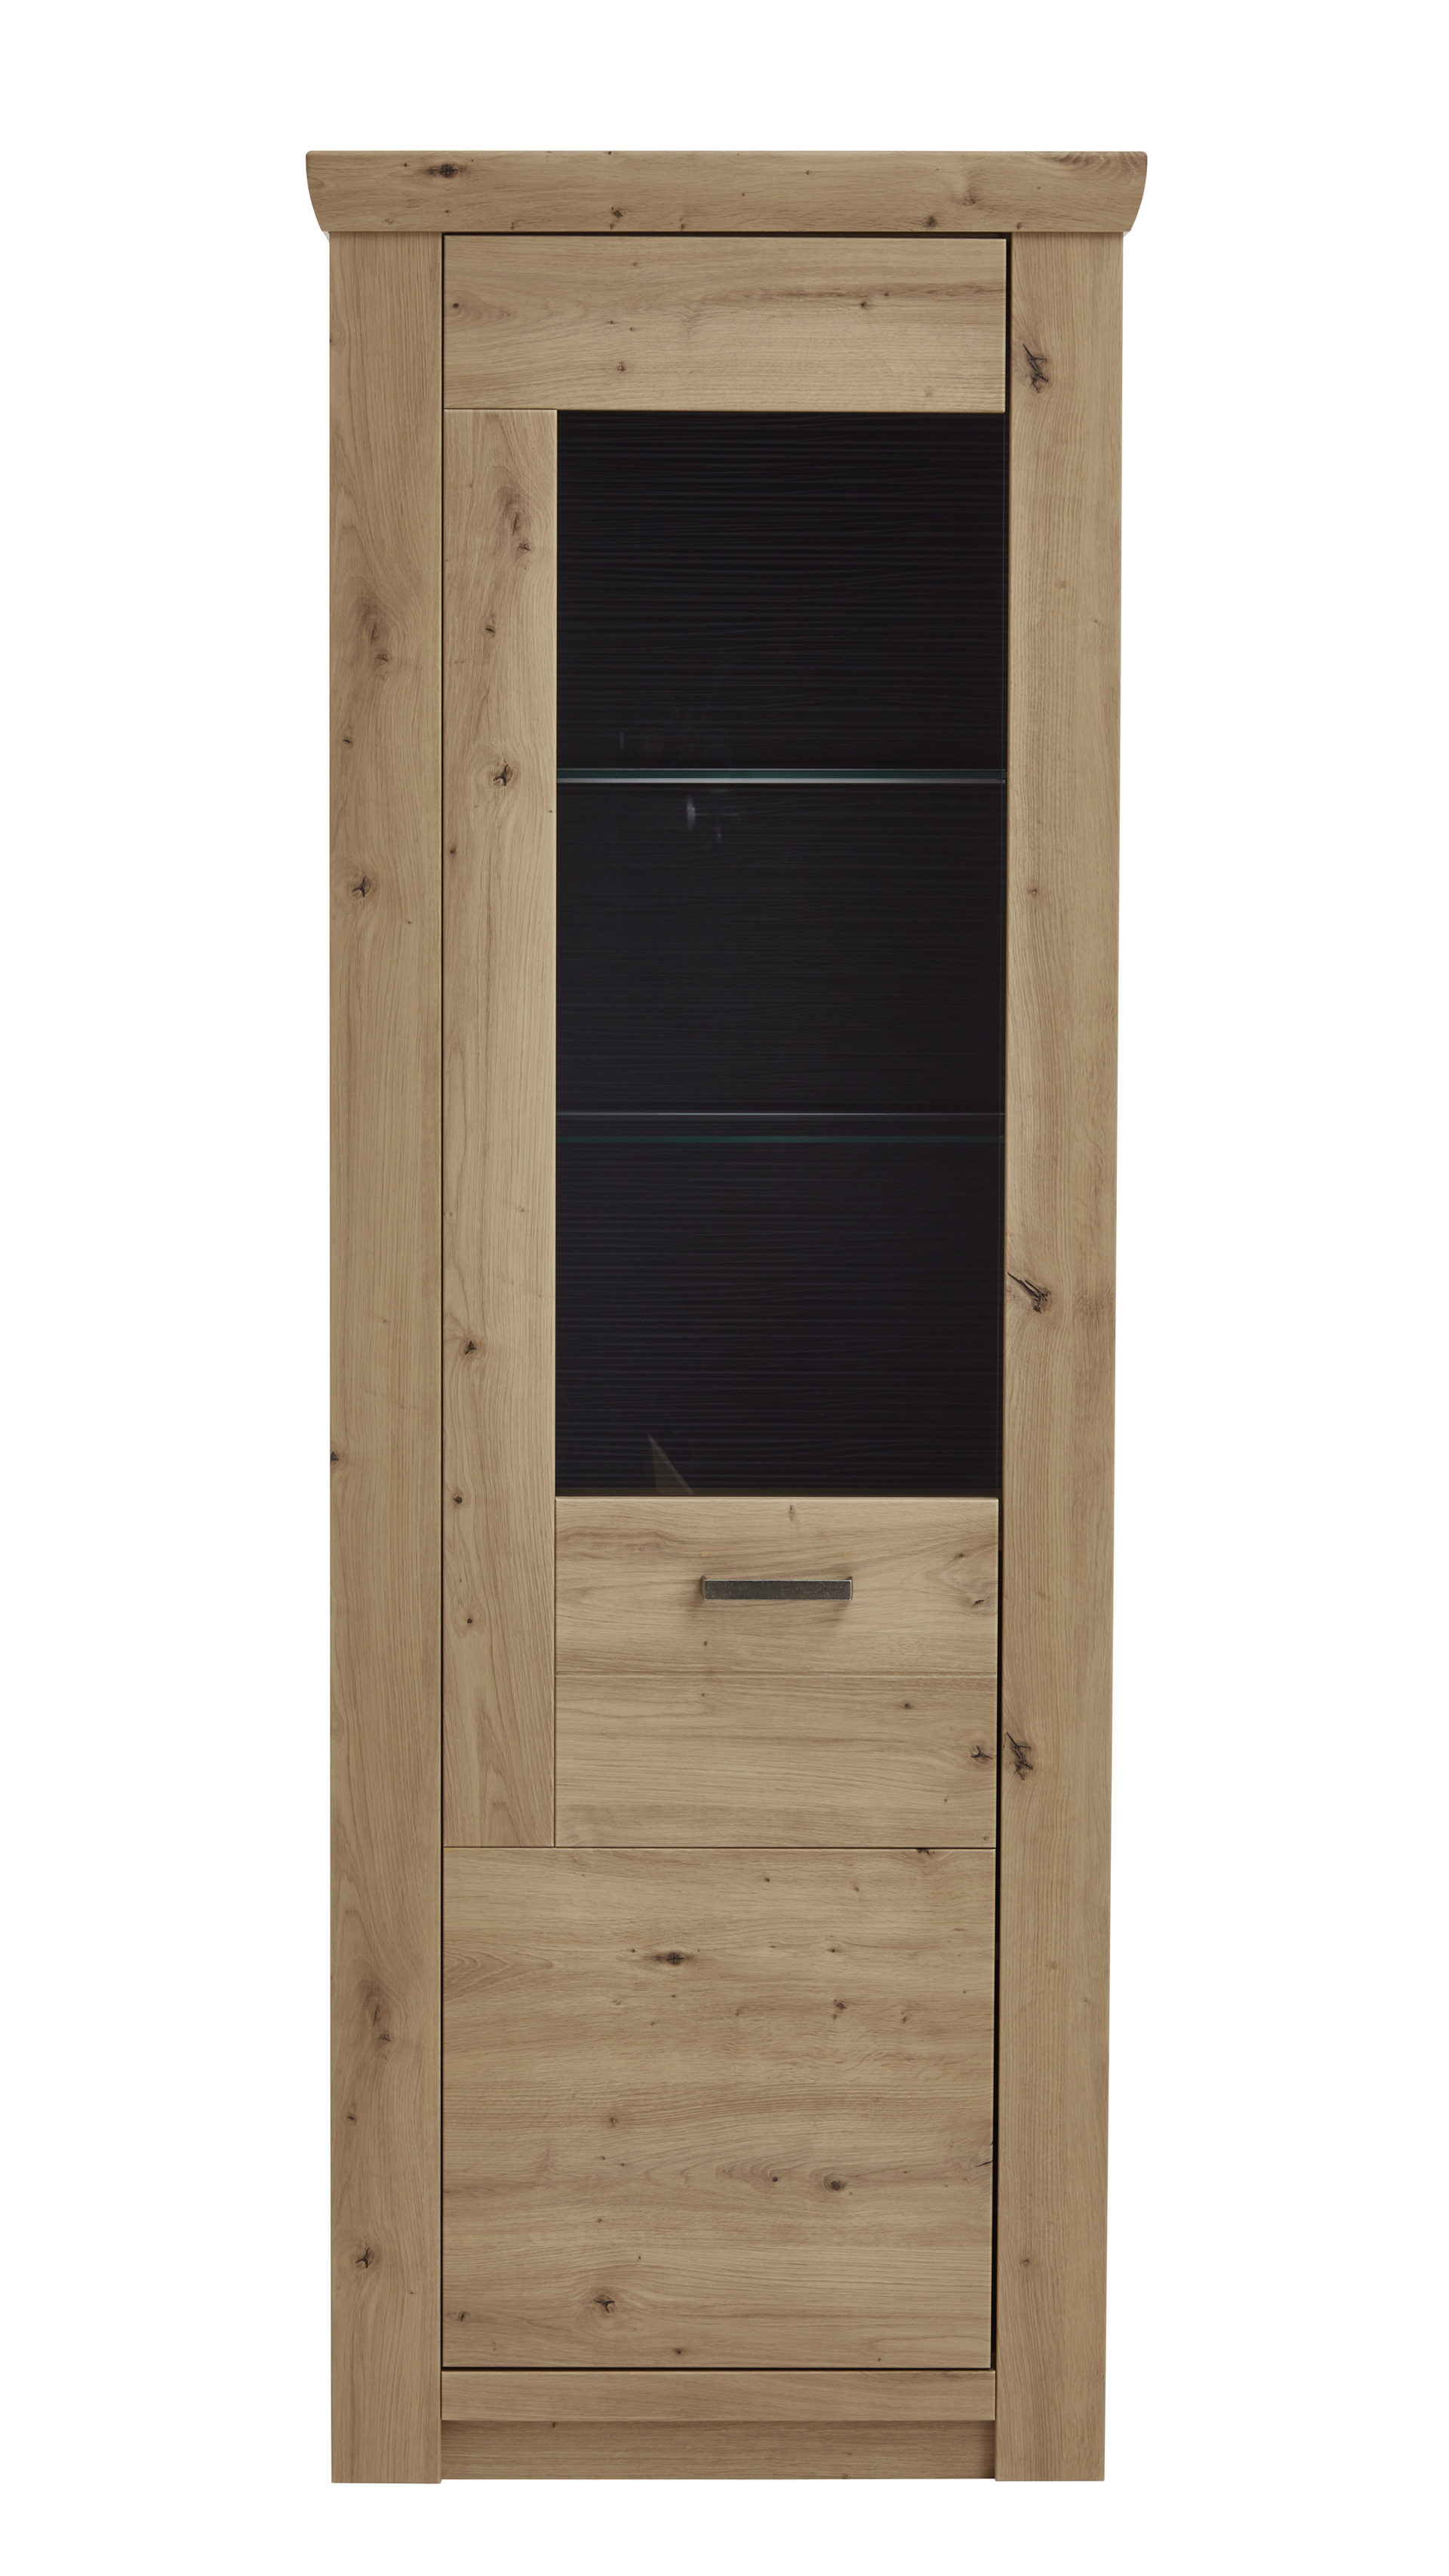 Vitrine Mca furniture aus Holz in Holzfarben Vitrine balkeneiche- & anthrazitfarbene Kunststoffoberflächen – eine Tür